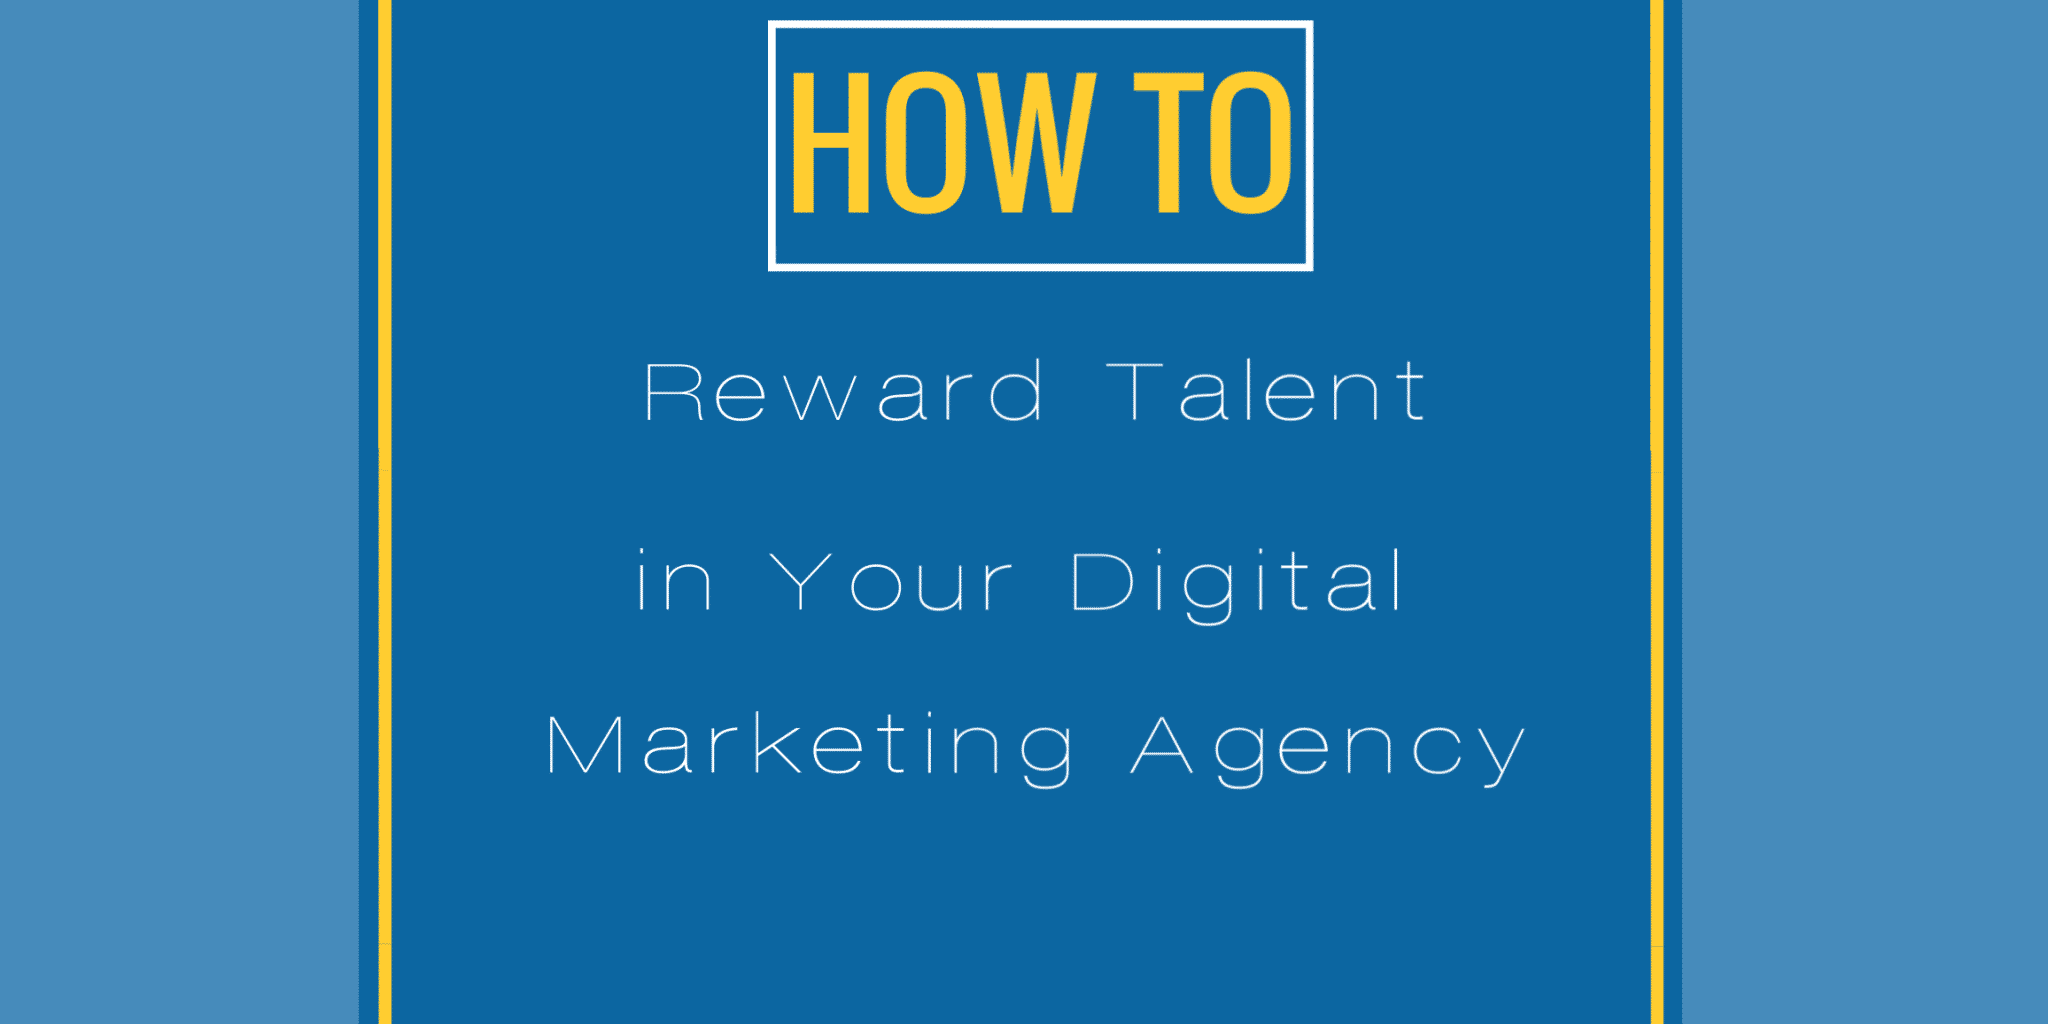 Your Digital Marketing Agency